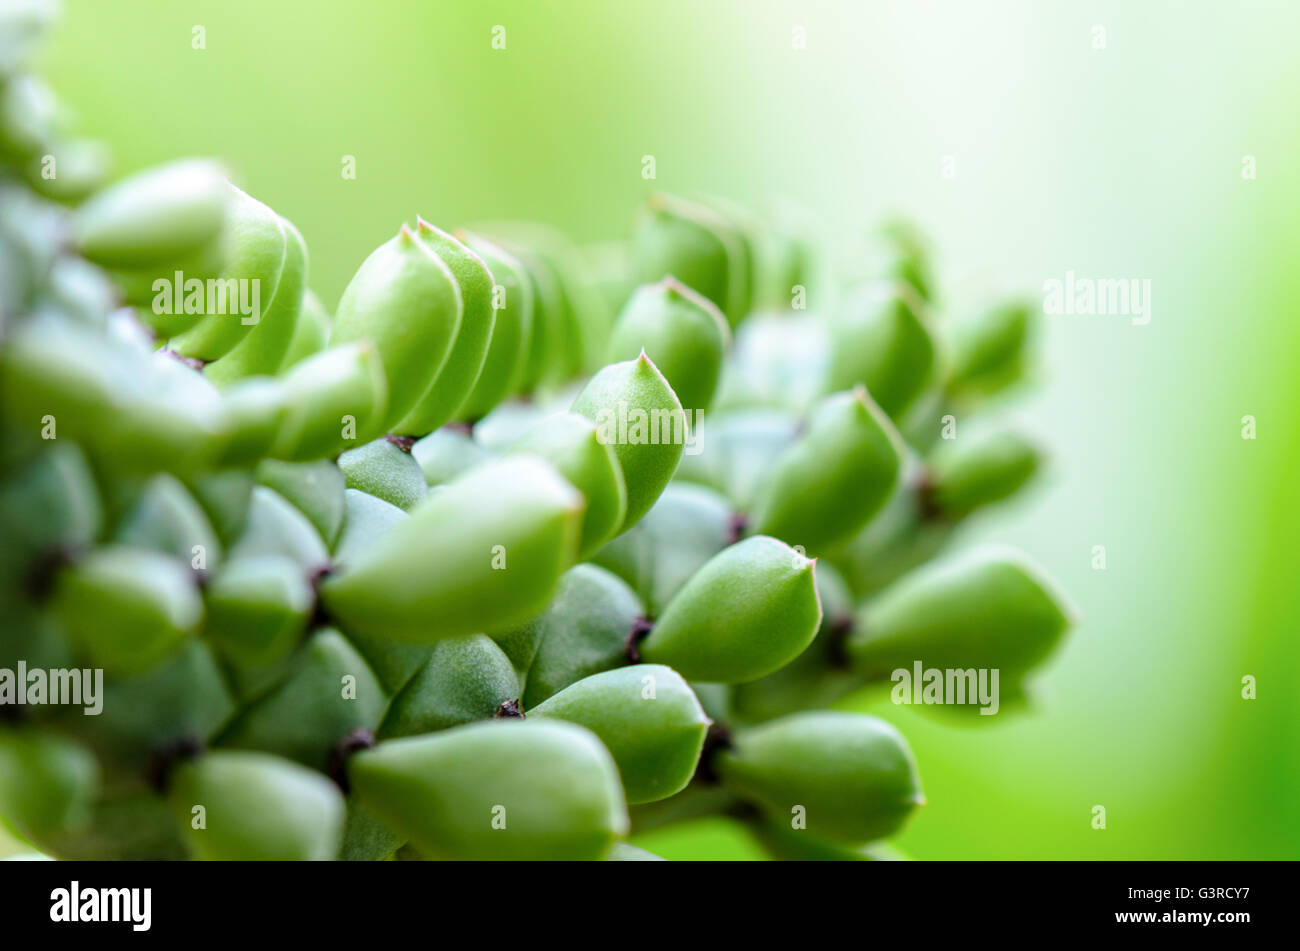 Close-up hermosa naturaleza verde de fondo. Exóticas plantas ornamentales con forma de serpiente y las hojas se asemejan a escamas de serpiente en Foto de stock